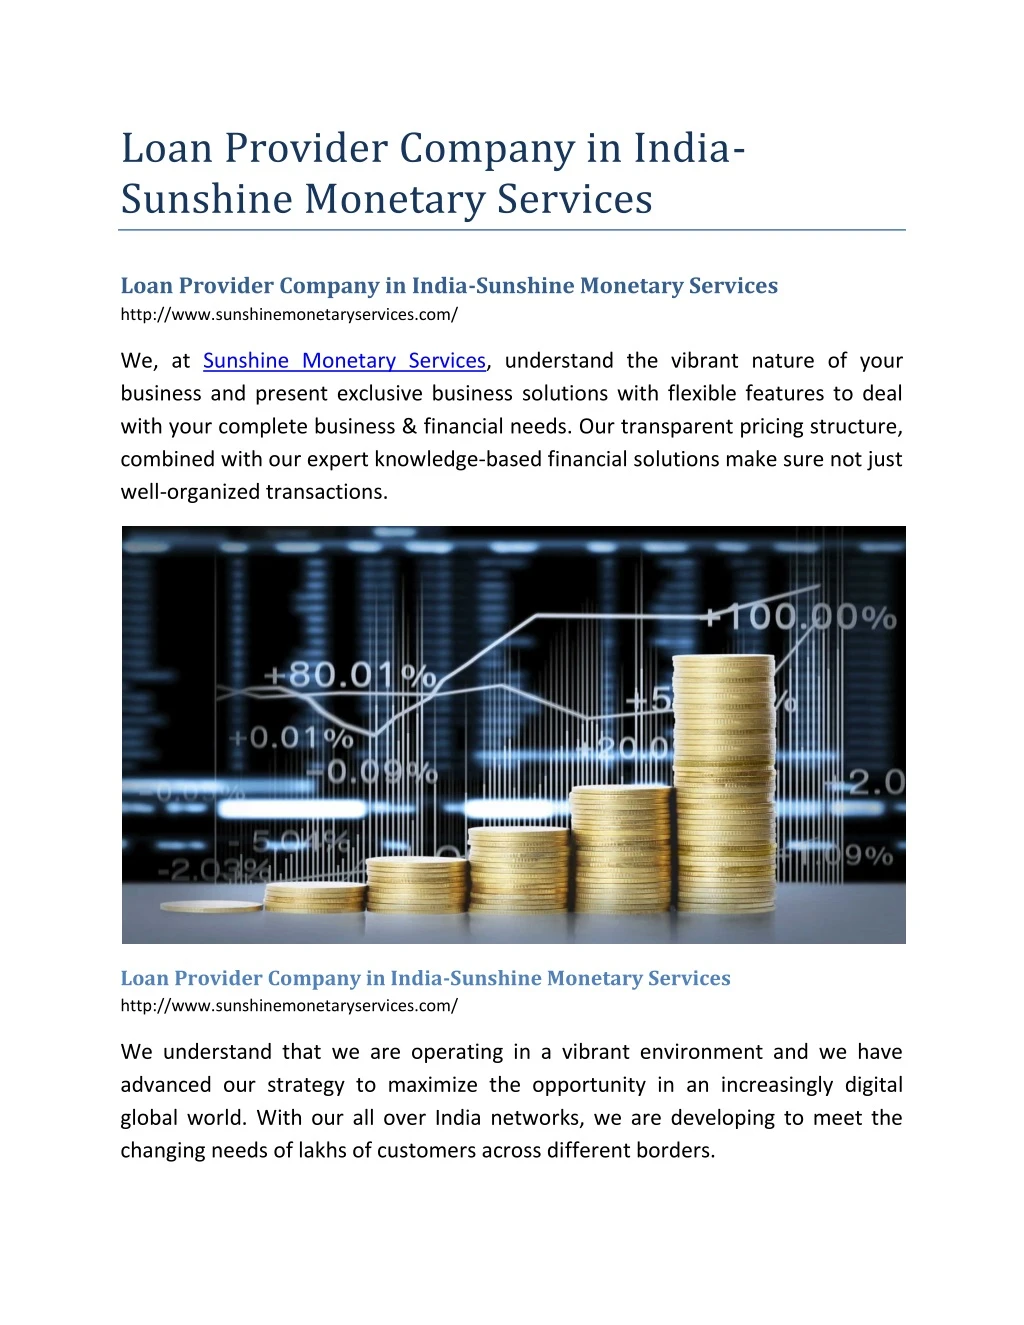 loan provider company in india sunshine monetary